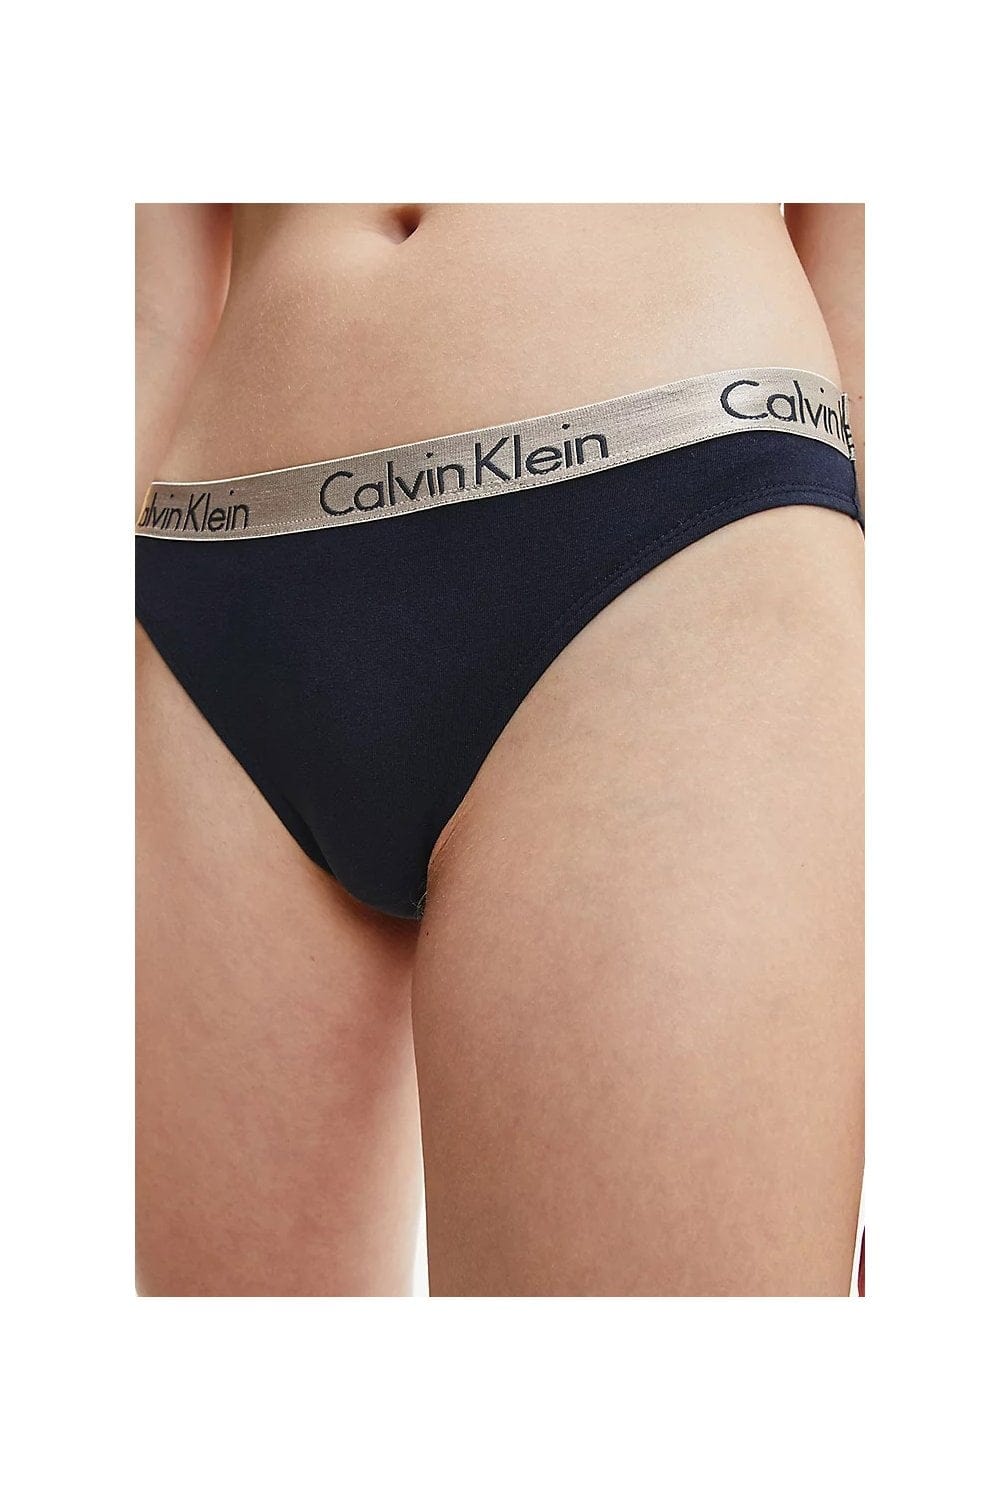 Panties Calvin Klein Calvin Klein Radiant Cotton Thong 3-Pack